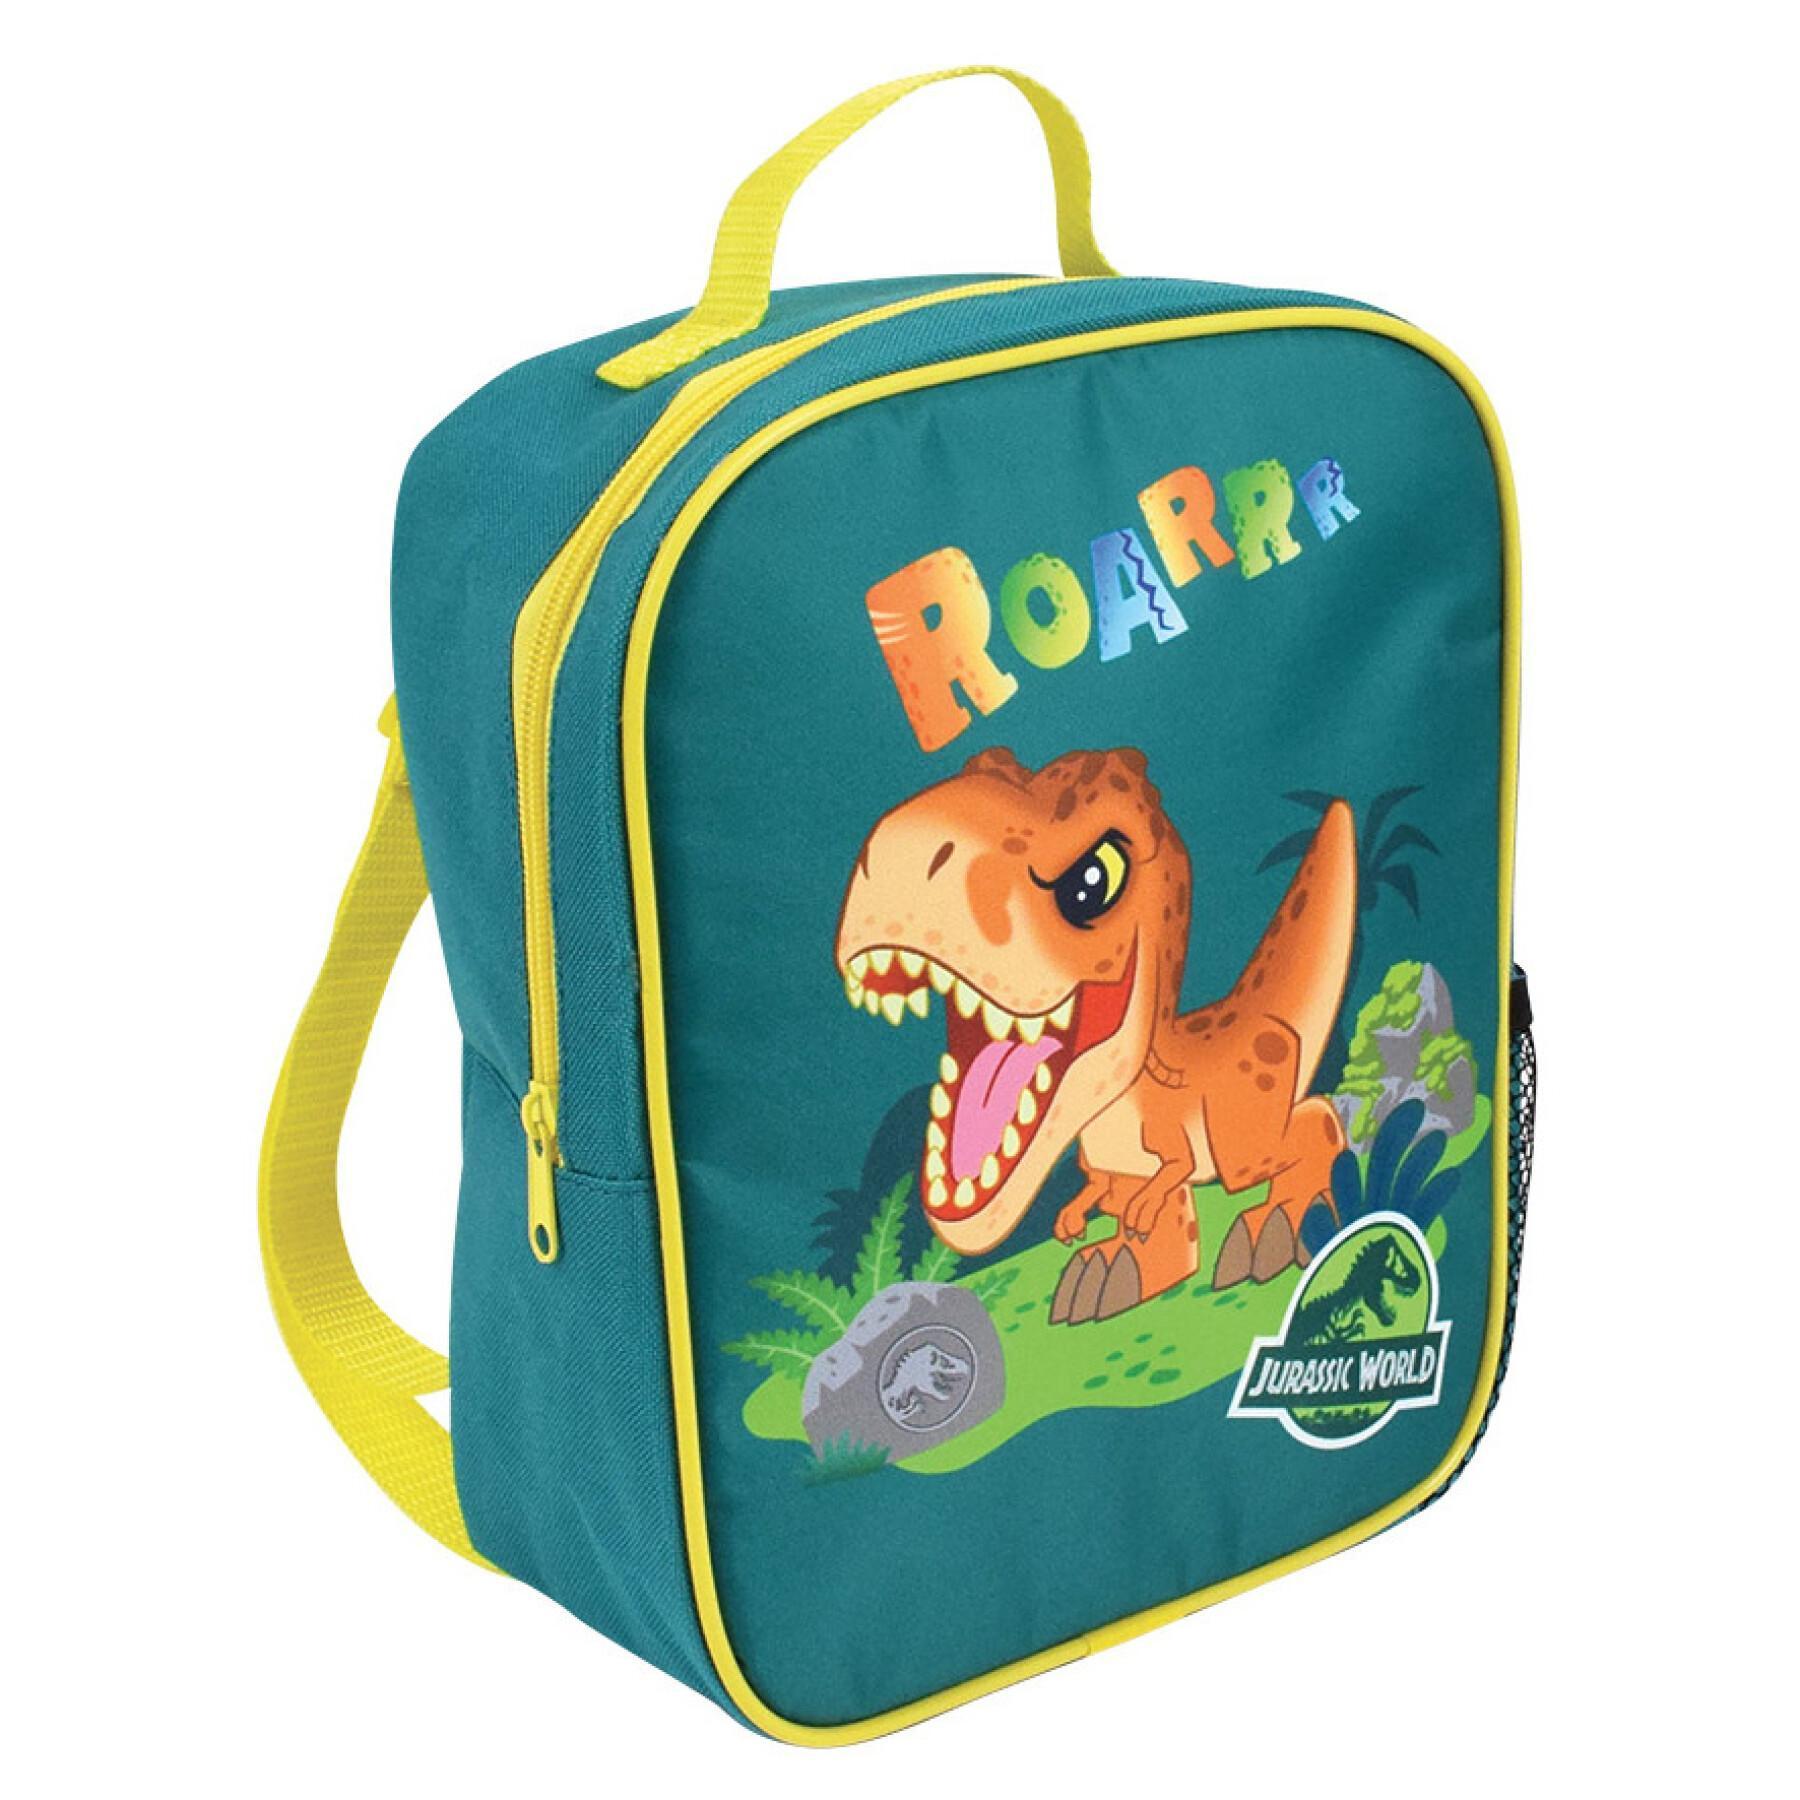 Children's insulated backpack Jemini Jurassic World